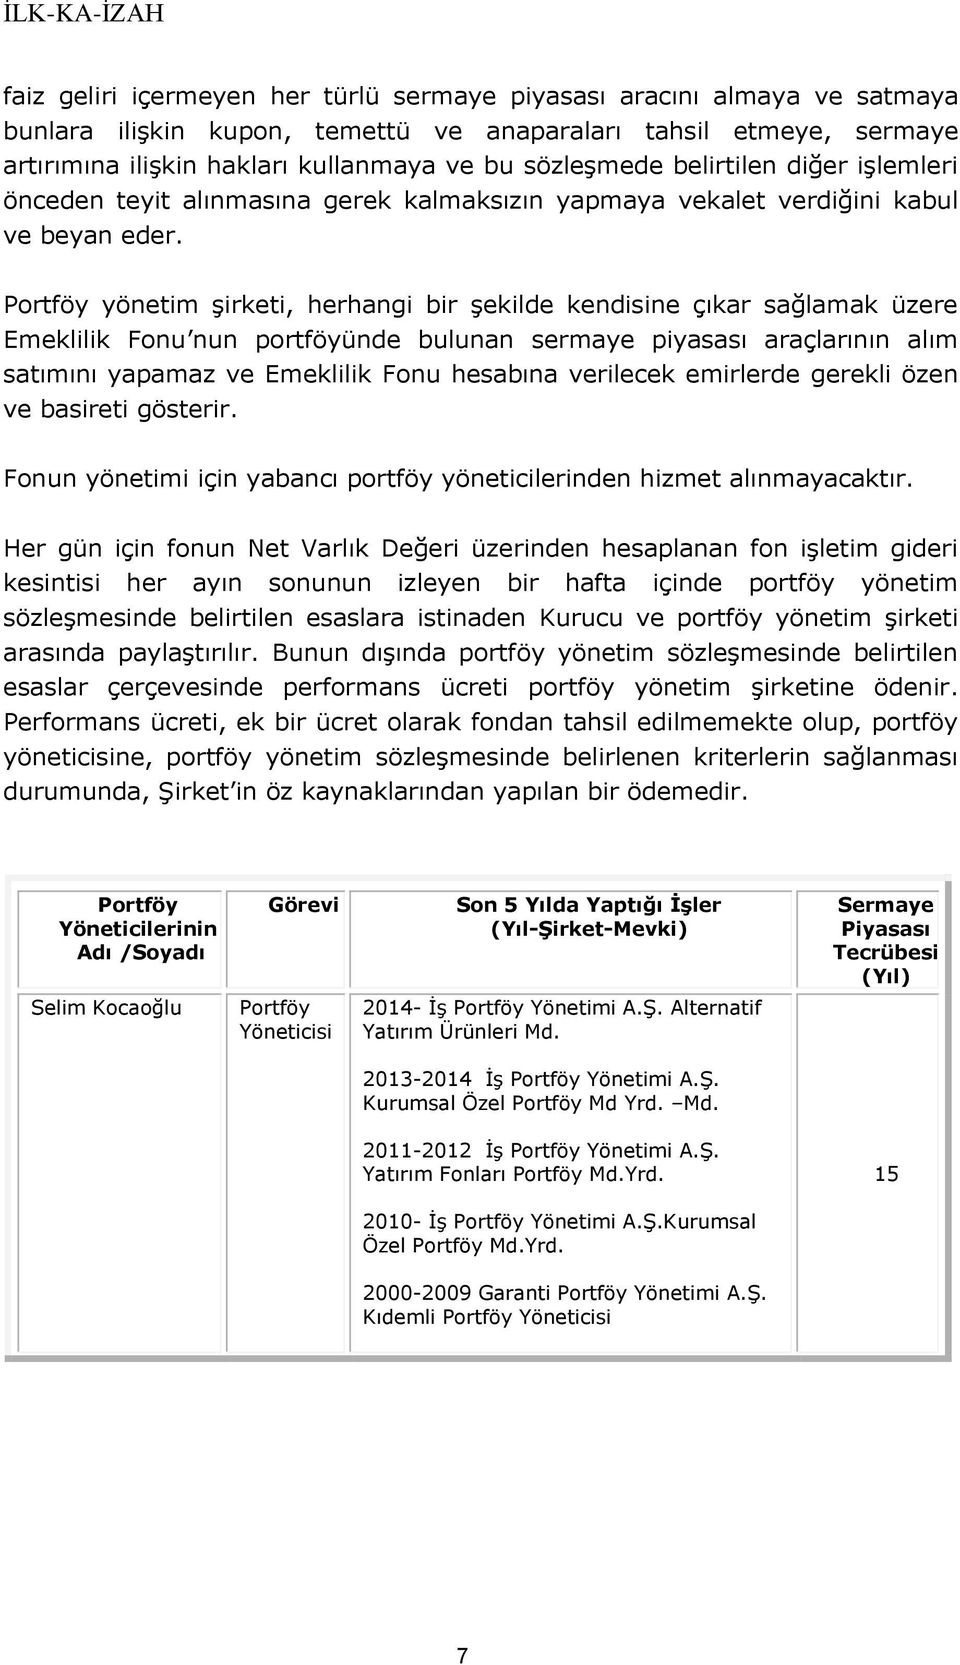 Portföy yönetim şirketi, herhangi bir şekilde kendisine çıkar sağlamak üzere Emeklilik Fonu nun portföyünde bulunan sermaye piyasası araçlarının alım satımını yapamaz ve Emeklilik Fonu hesabına